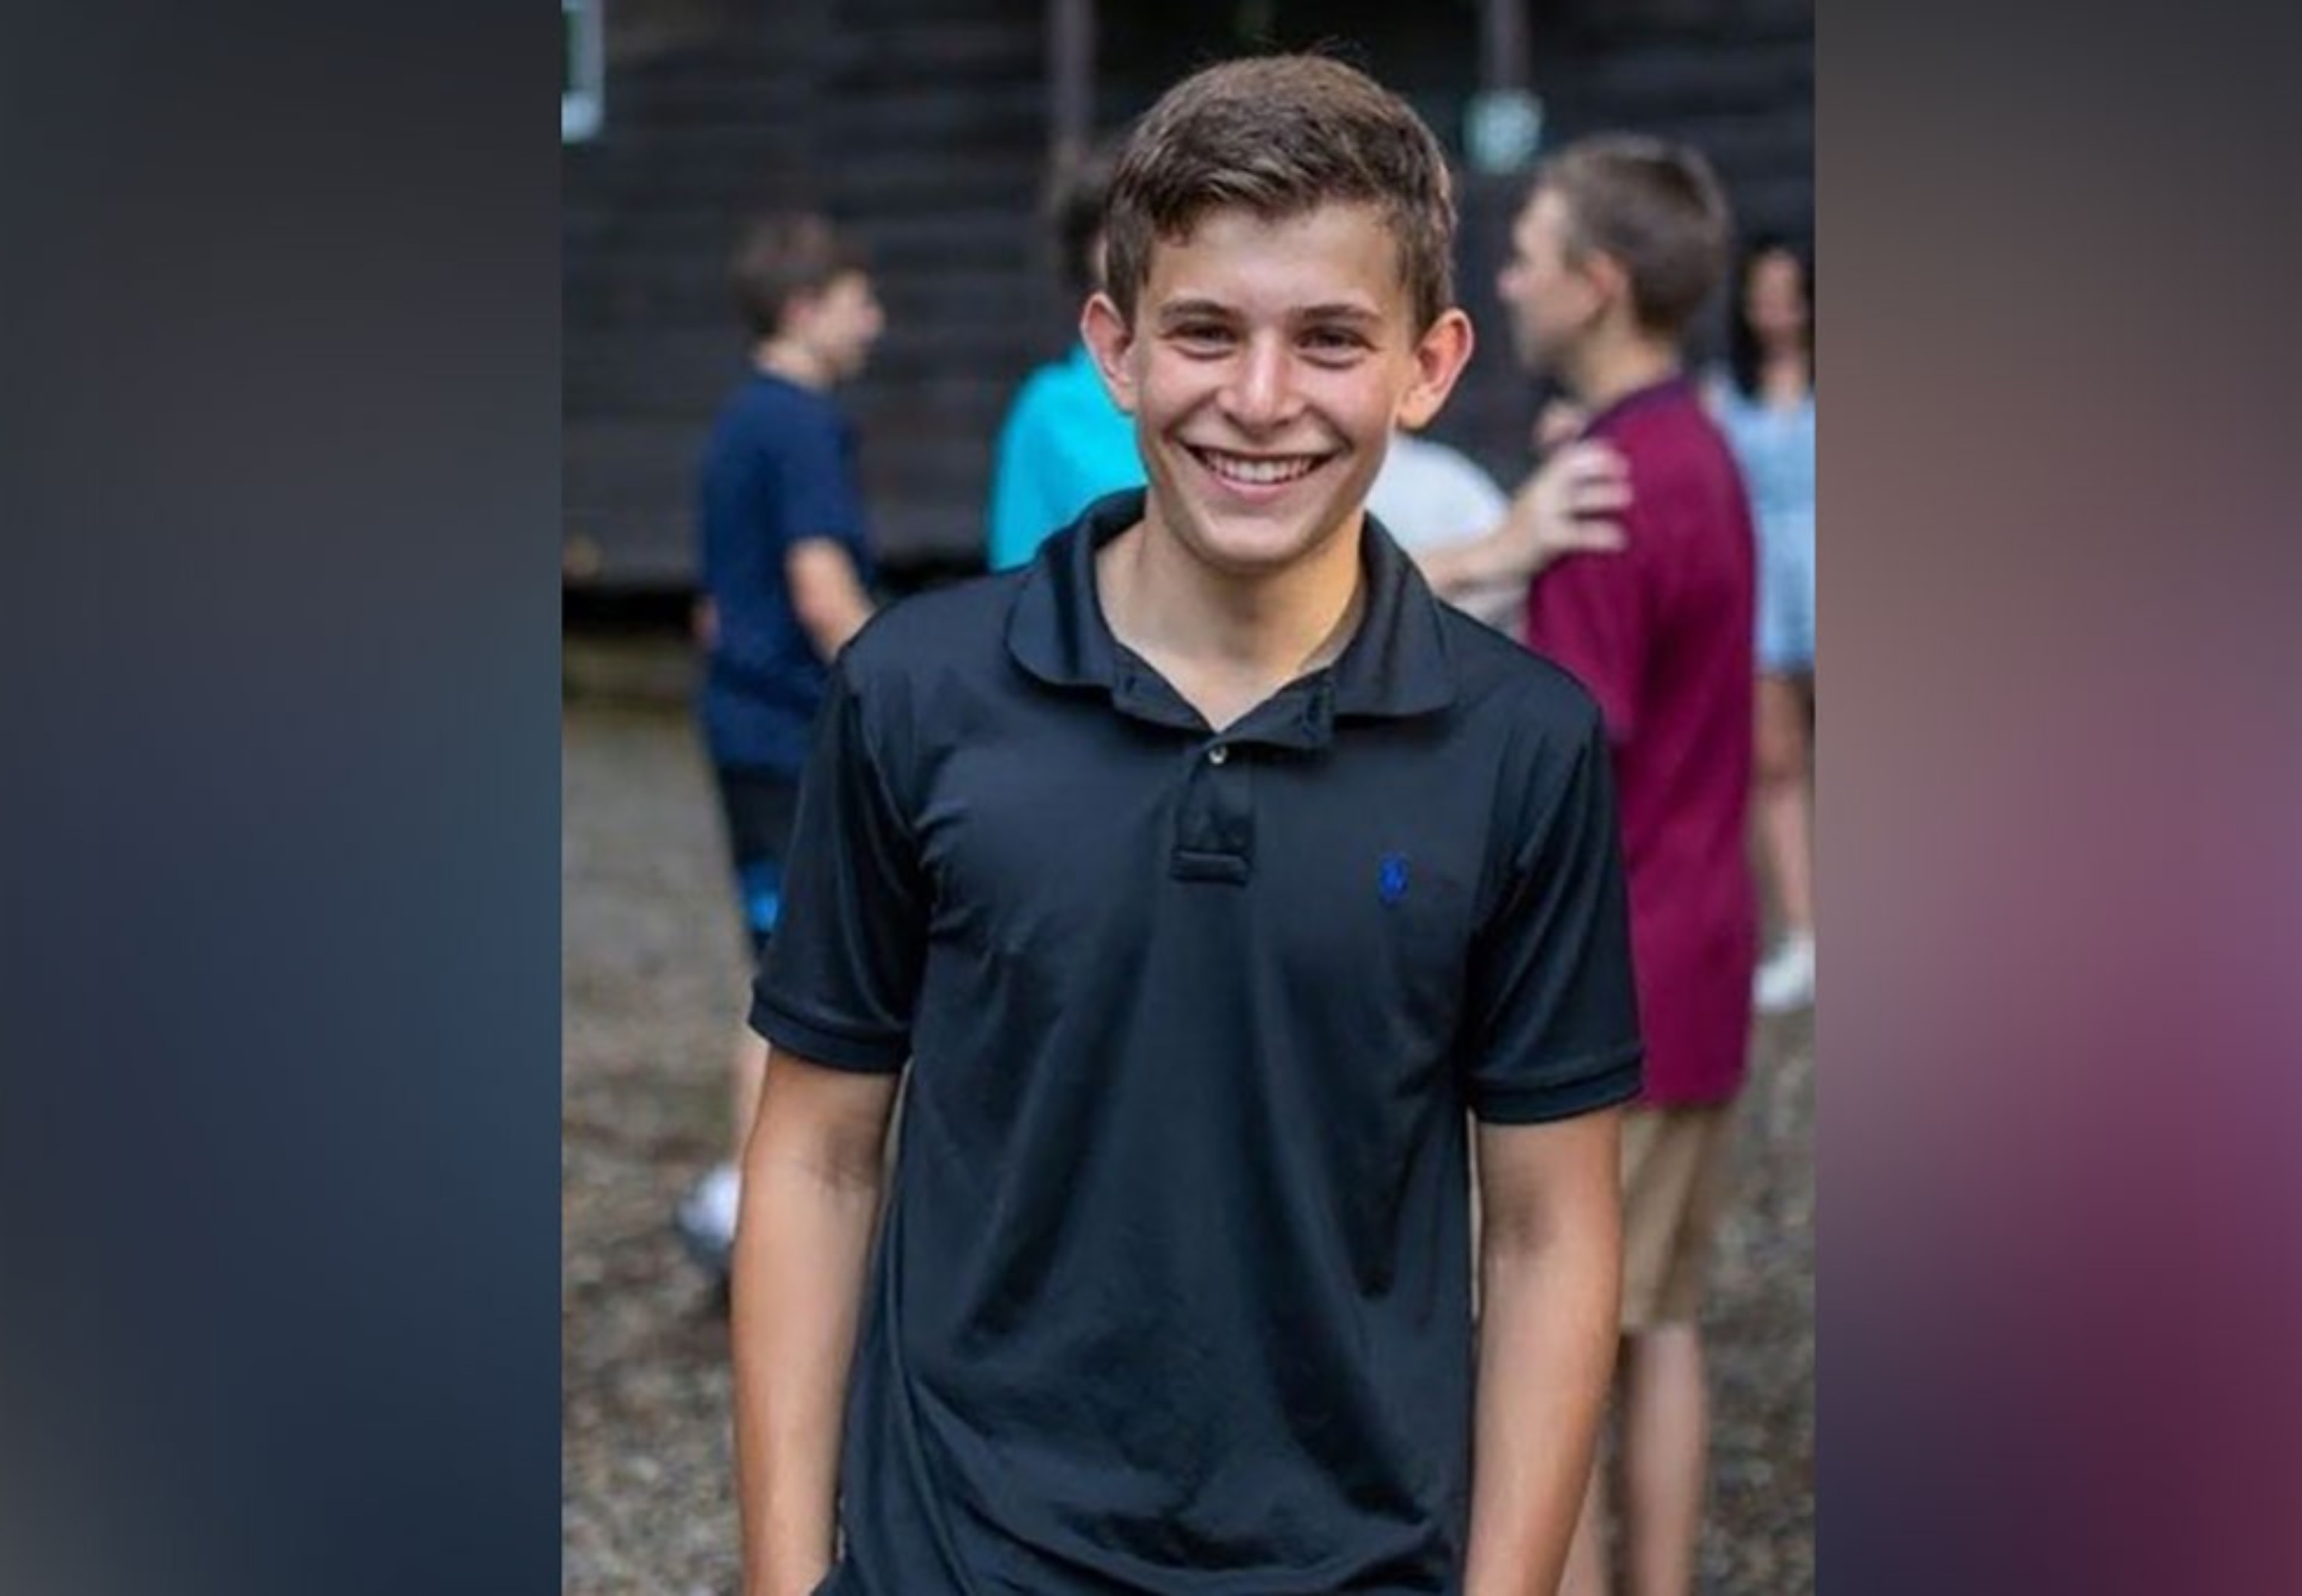 El joven estudiante de St. Luke's School en Connecticut, Teddy Balkind, murió esta semana después de que accidentalmente el patín de otro jugador le cortara el cuello durante un partido de hockey. Foto Twitter.